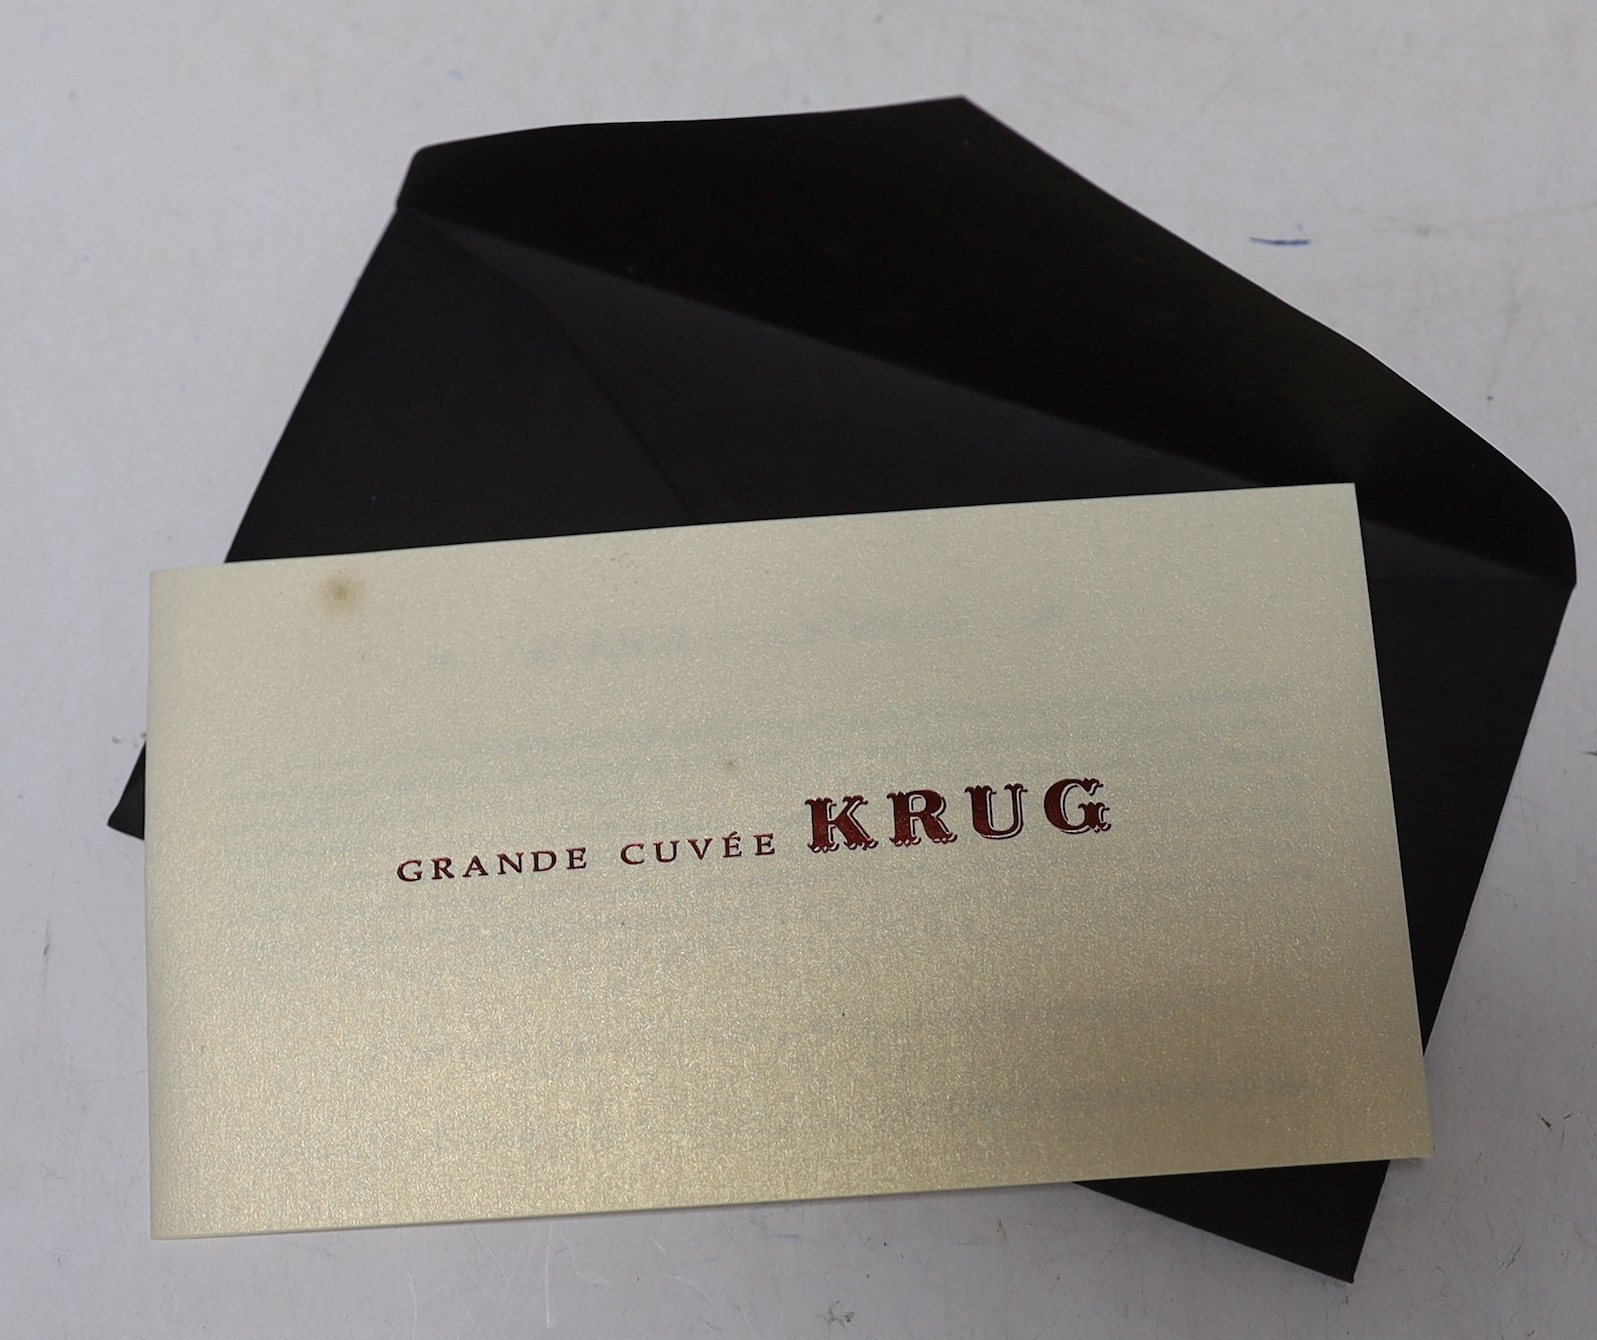 A bottle of Krug Grande Cuvee Champagne